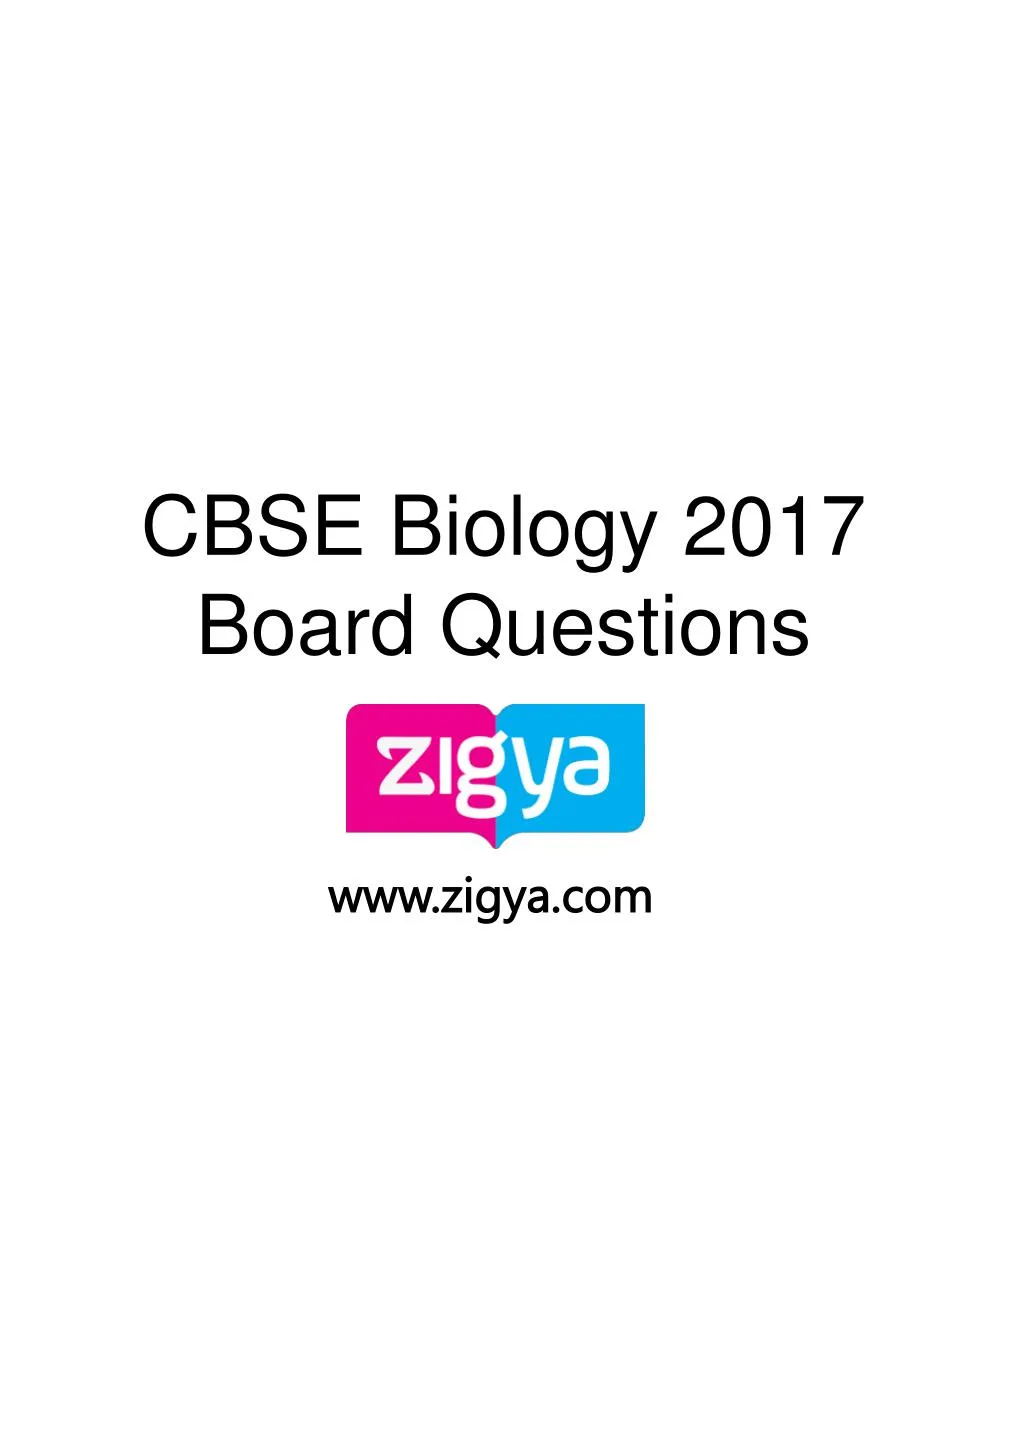 cbse biology 2017 board questions